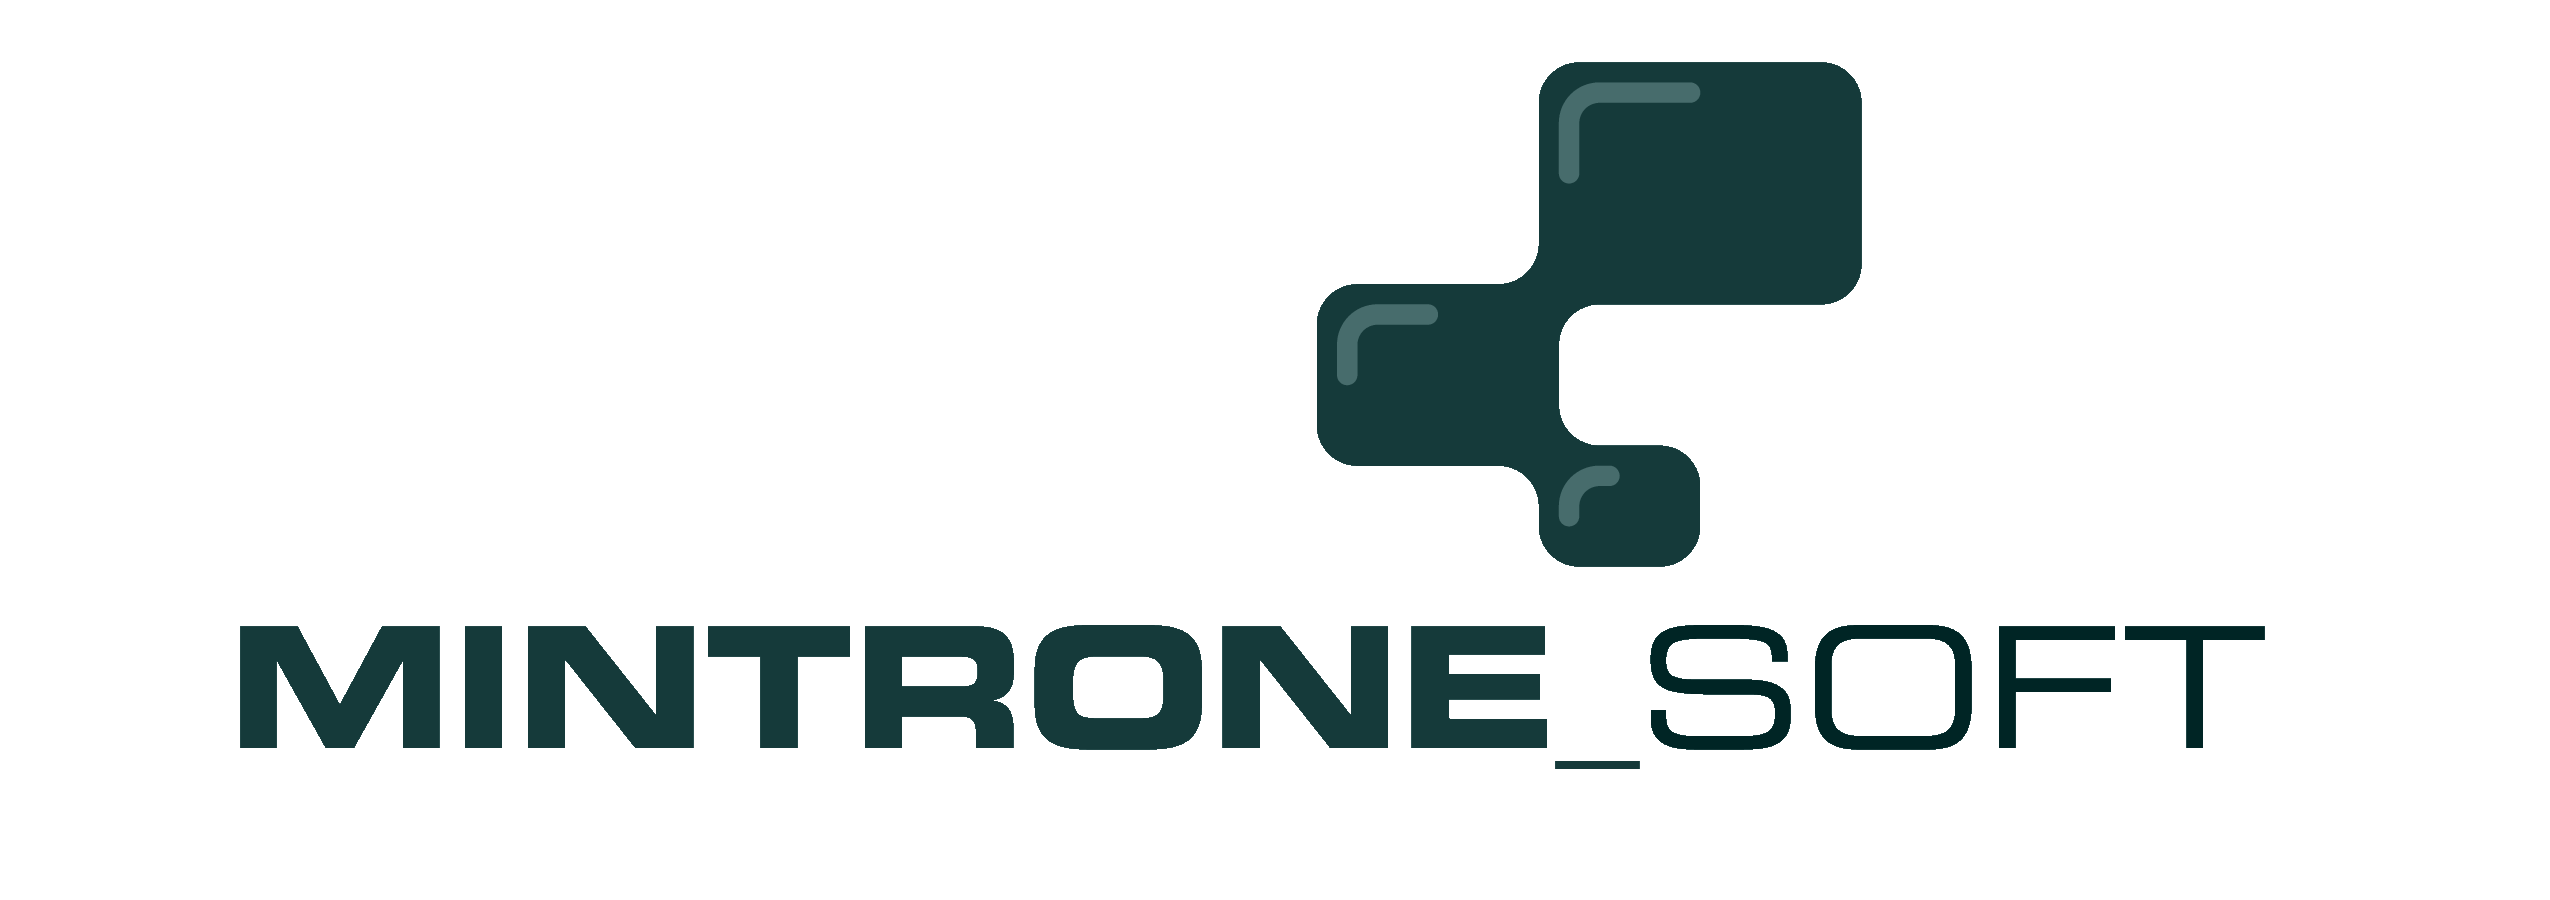 Logo MintroneSoft